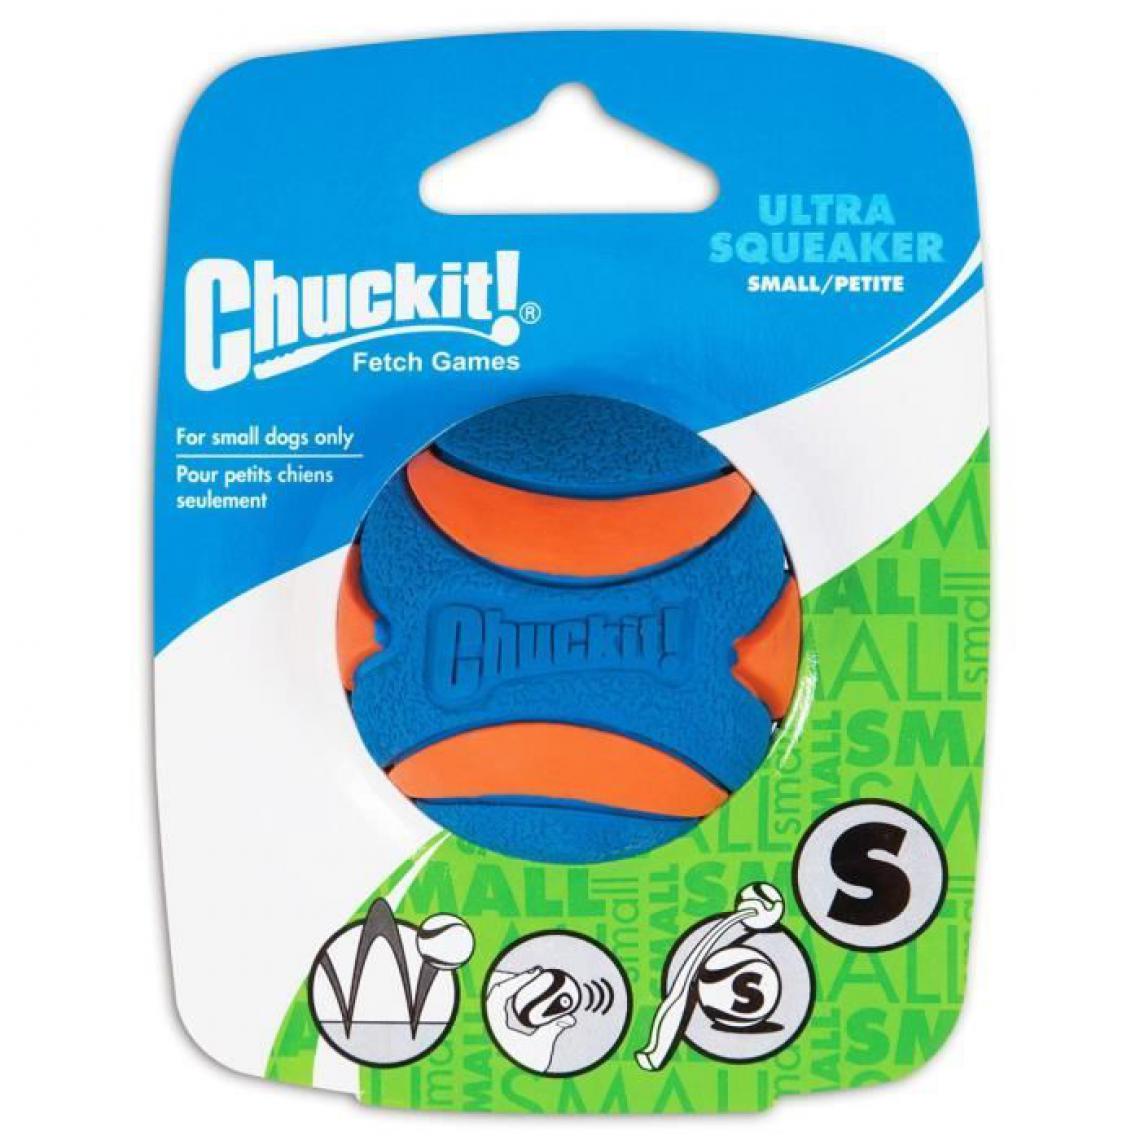 Inconnu - CHUCKIT! Ultra squeaker Balle avec sifflet S en caoutchouc Ø 5cm - Pour chien - Jouet pour chien